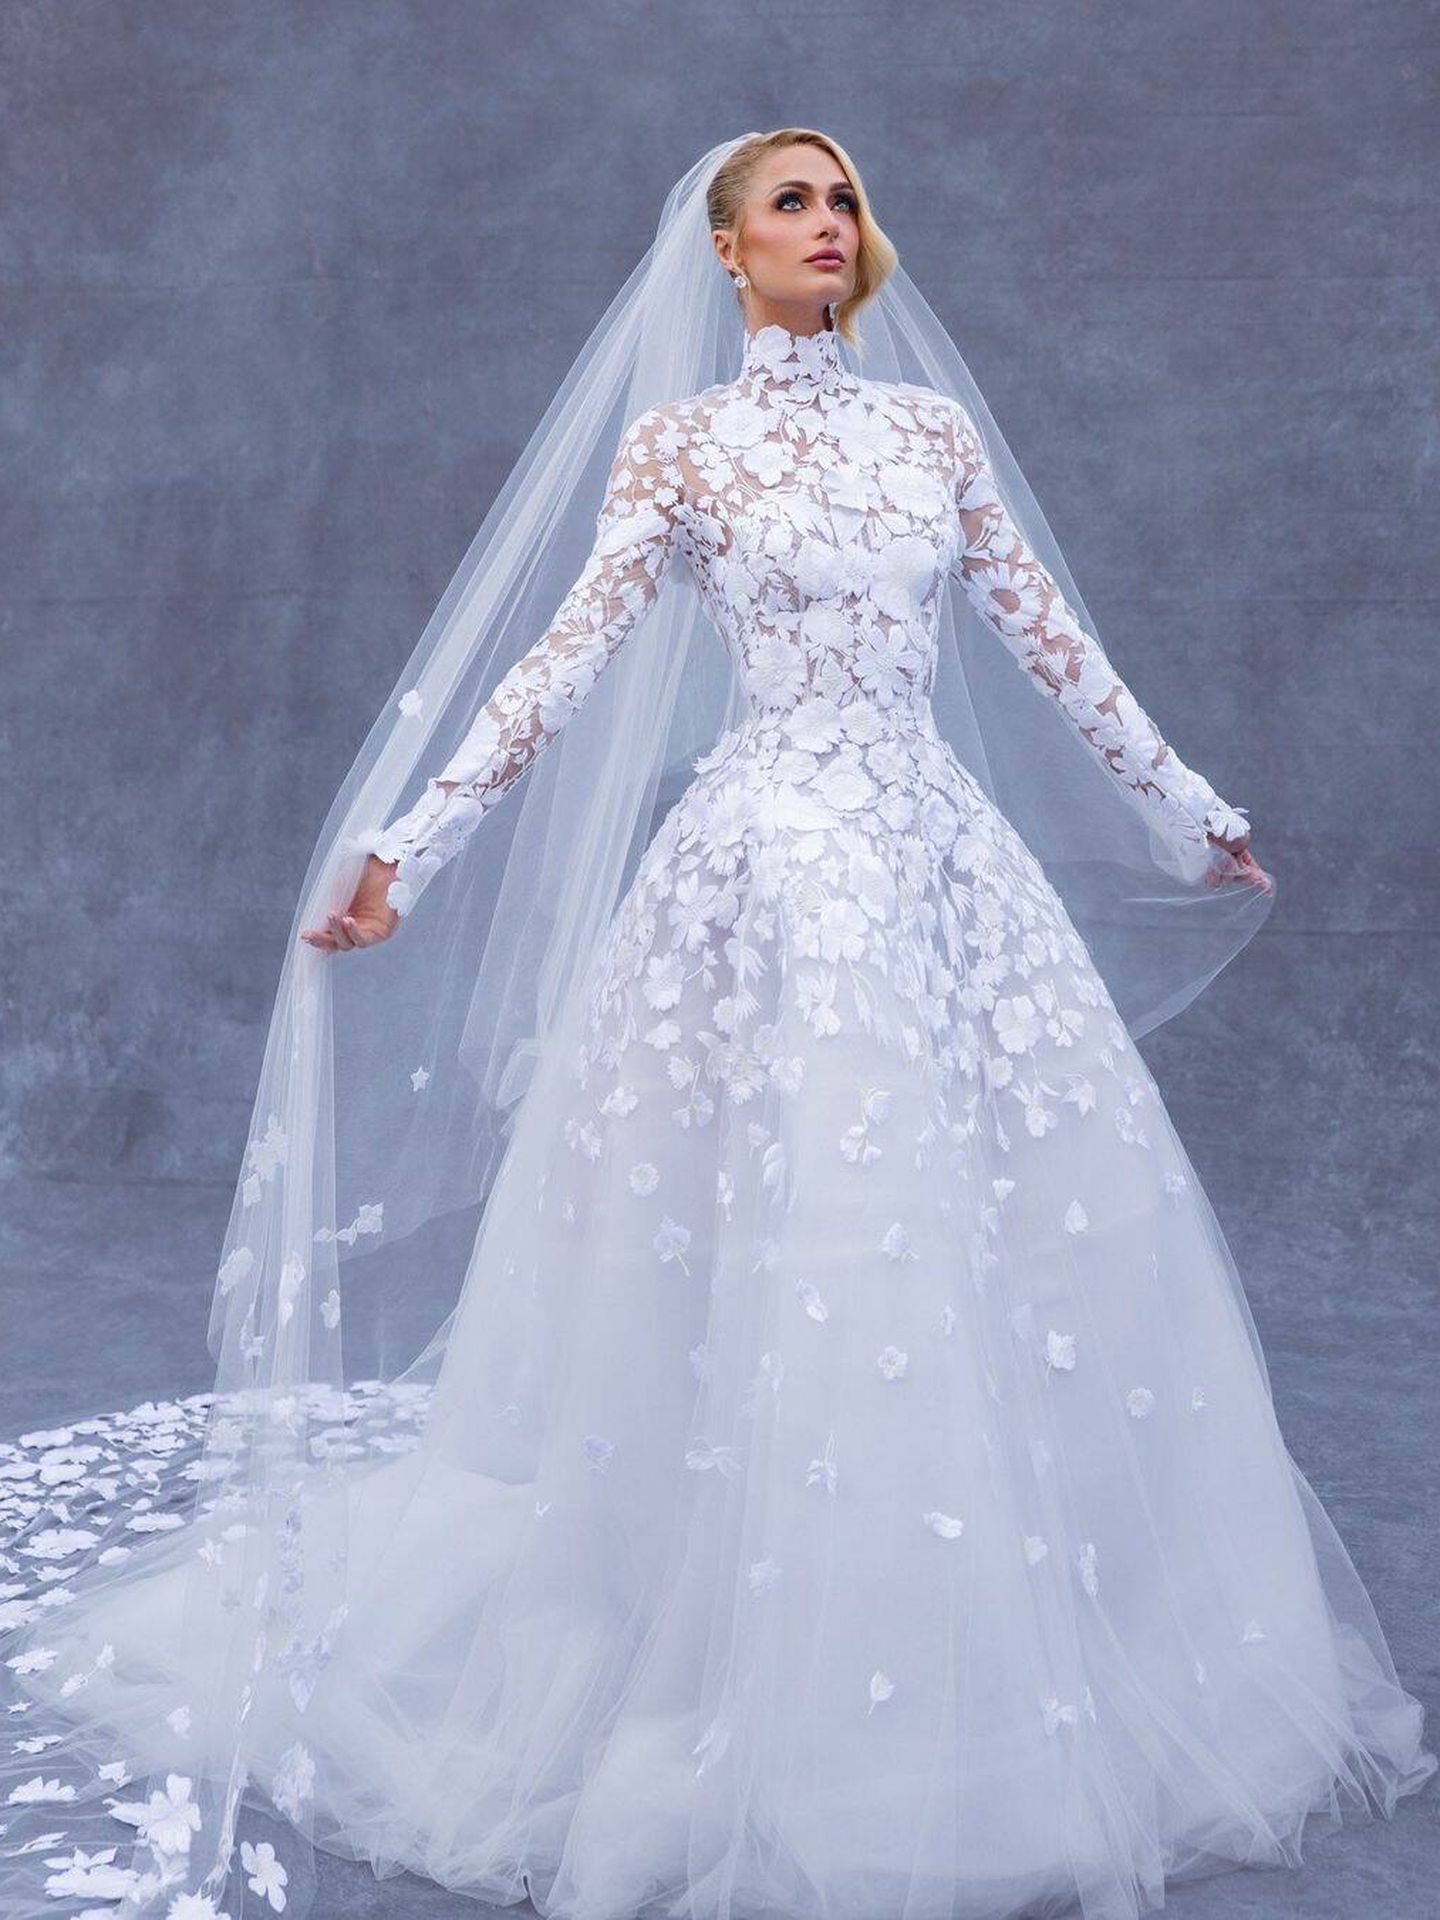 Paris Hilton y su vestido de novia. (Instagram/ @parishilton)